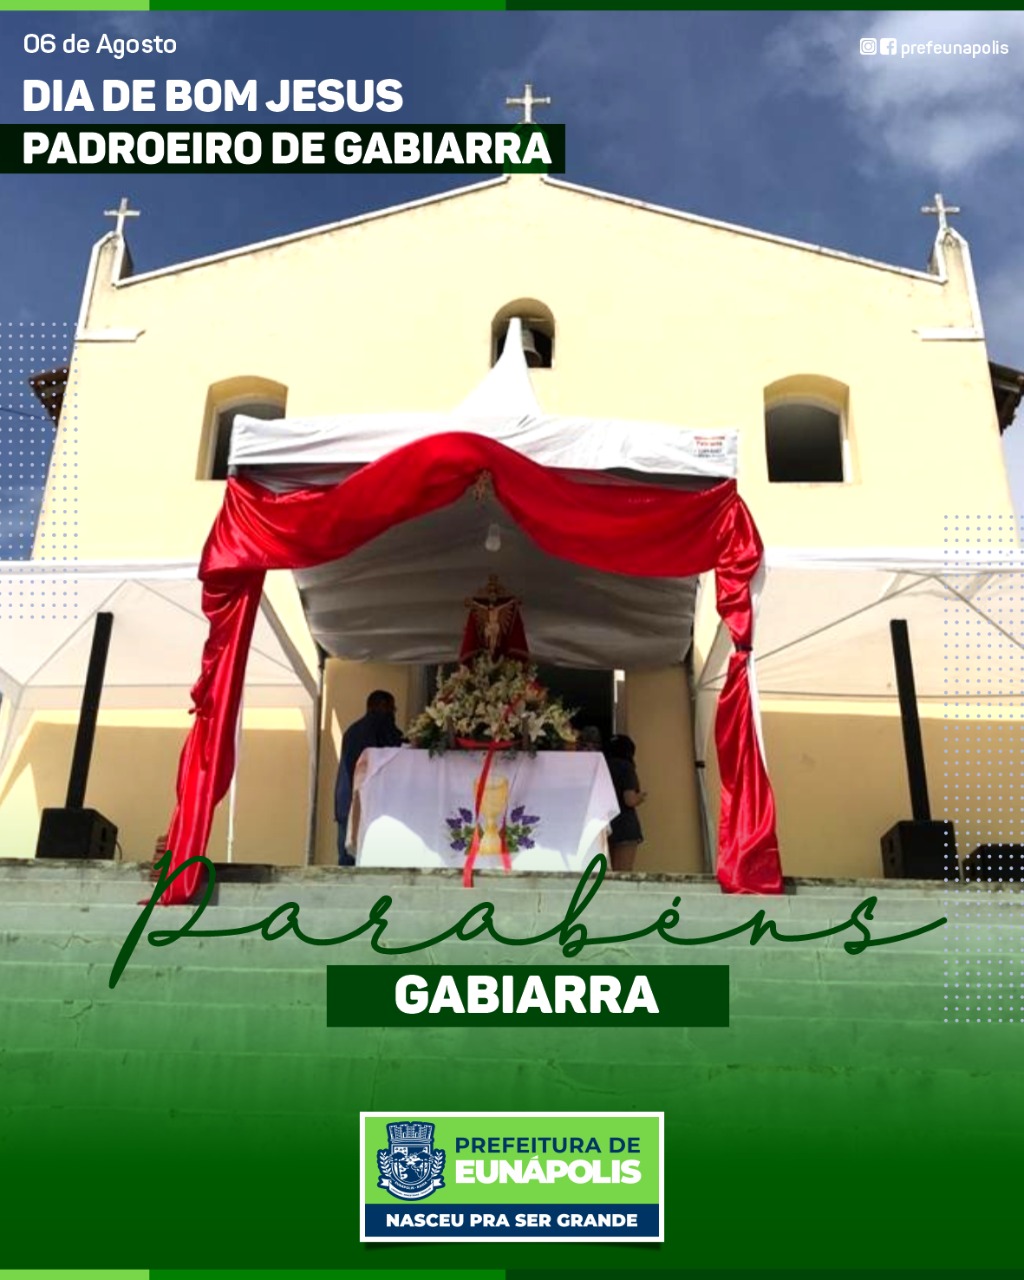 Distrito de Gabiarra celebra Dia do Padroeiro Bom Jesus 44